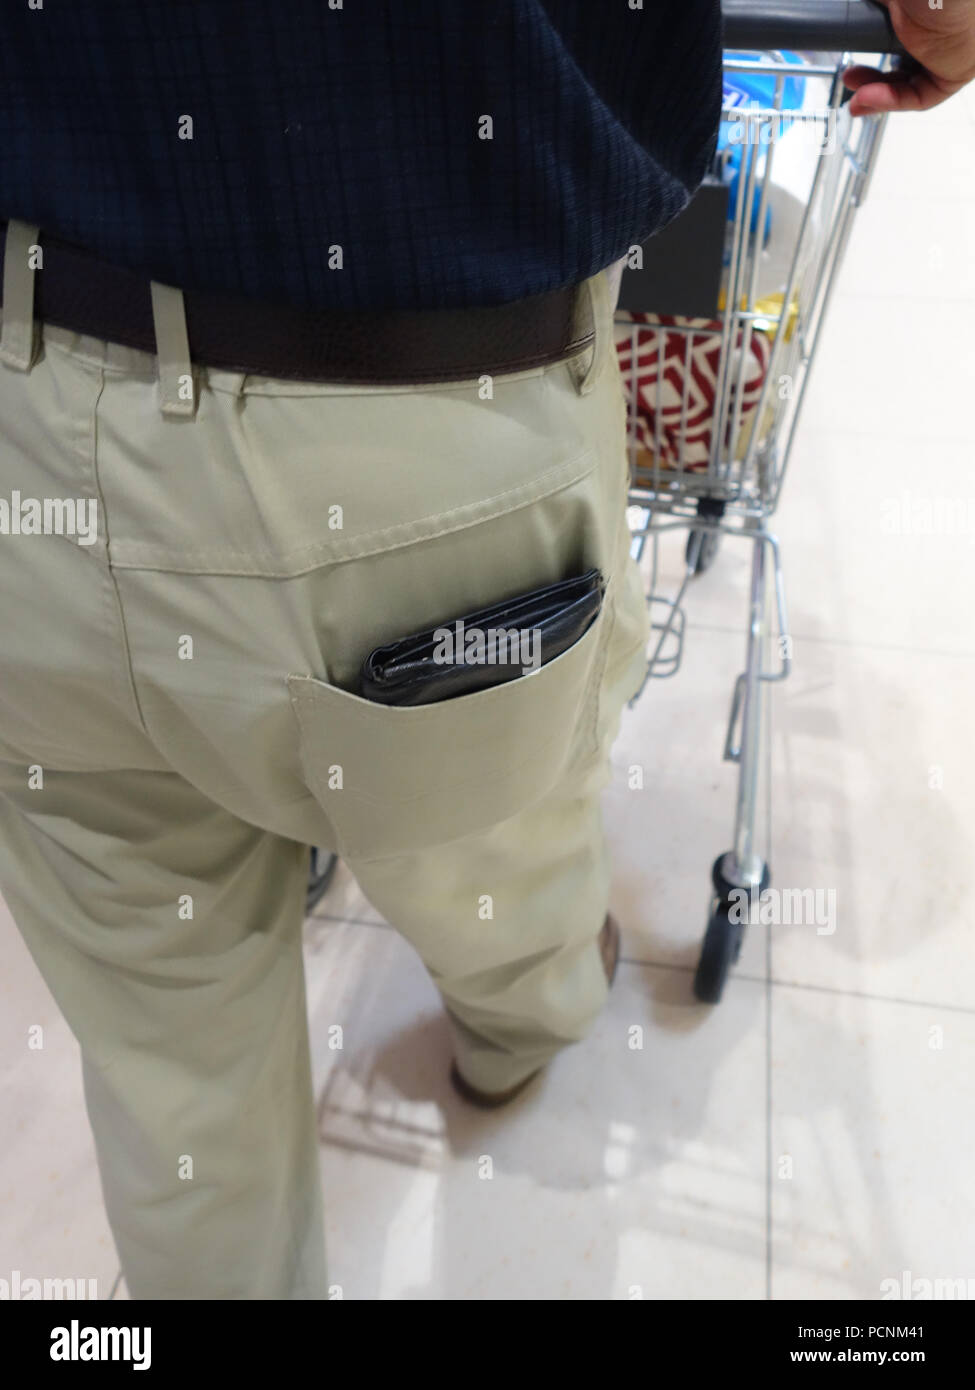 Old man shopping in supermarket avec son porte-monnaie sur l'affichage complet sortant de sa poche arrière prêt pour un pickpocket Banque D'Images